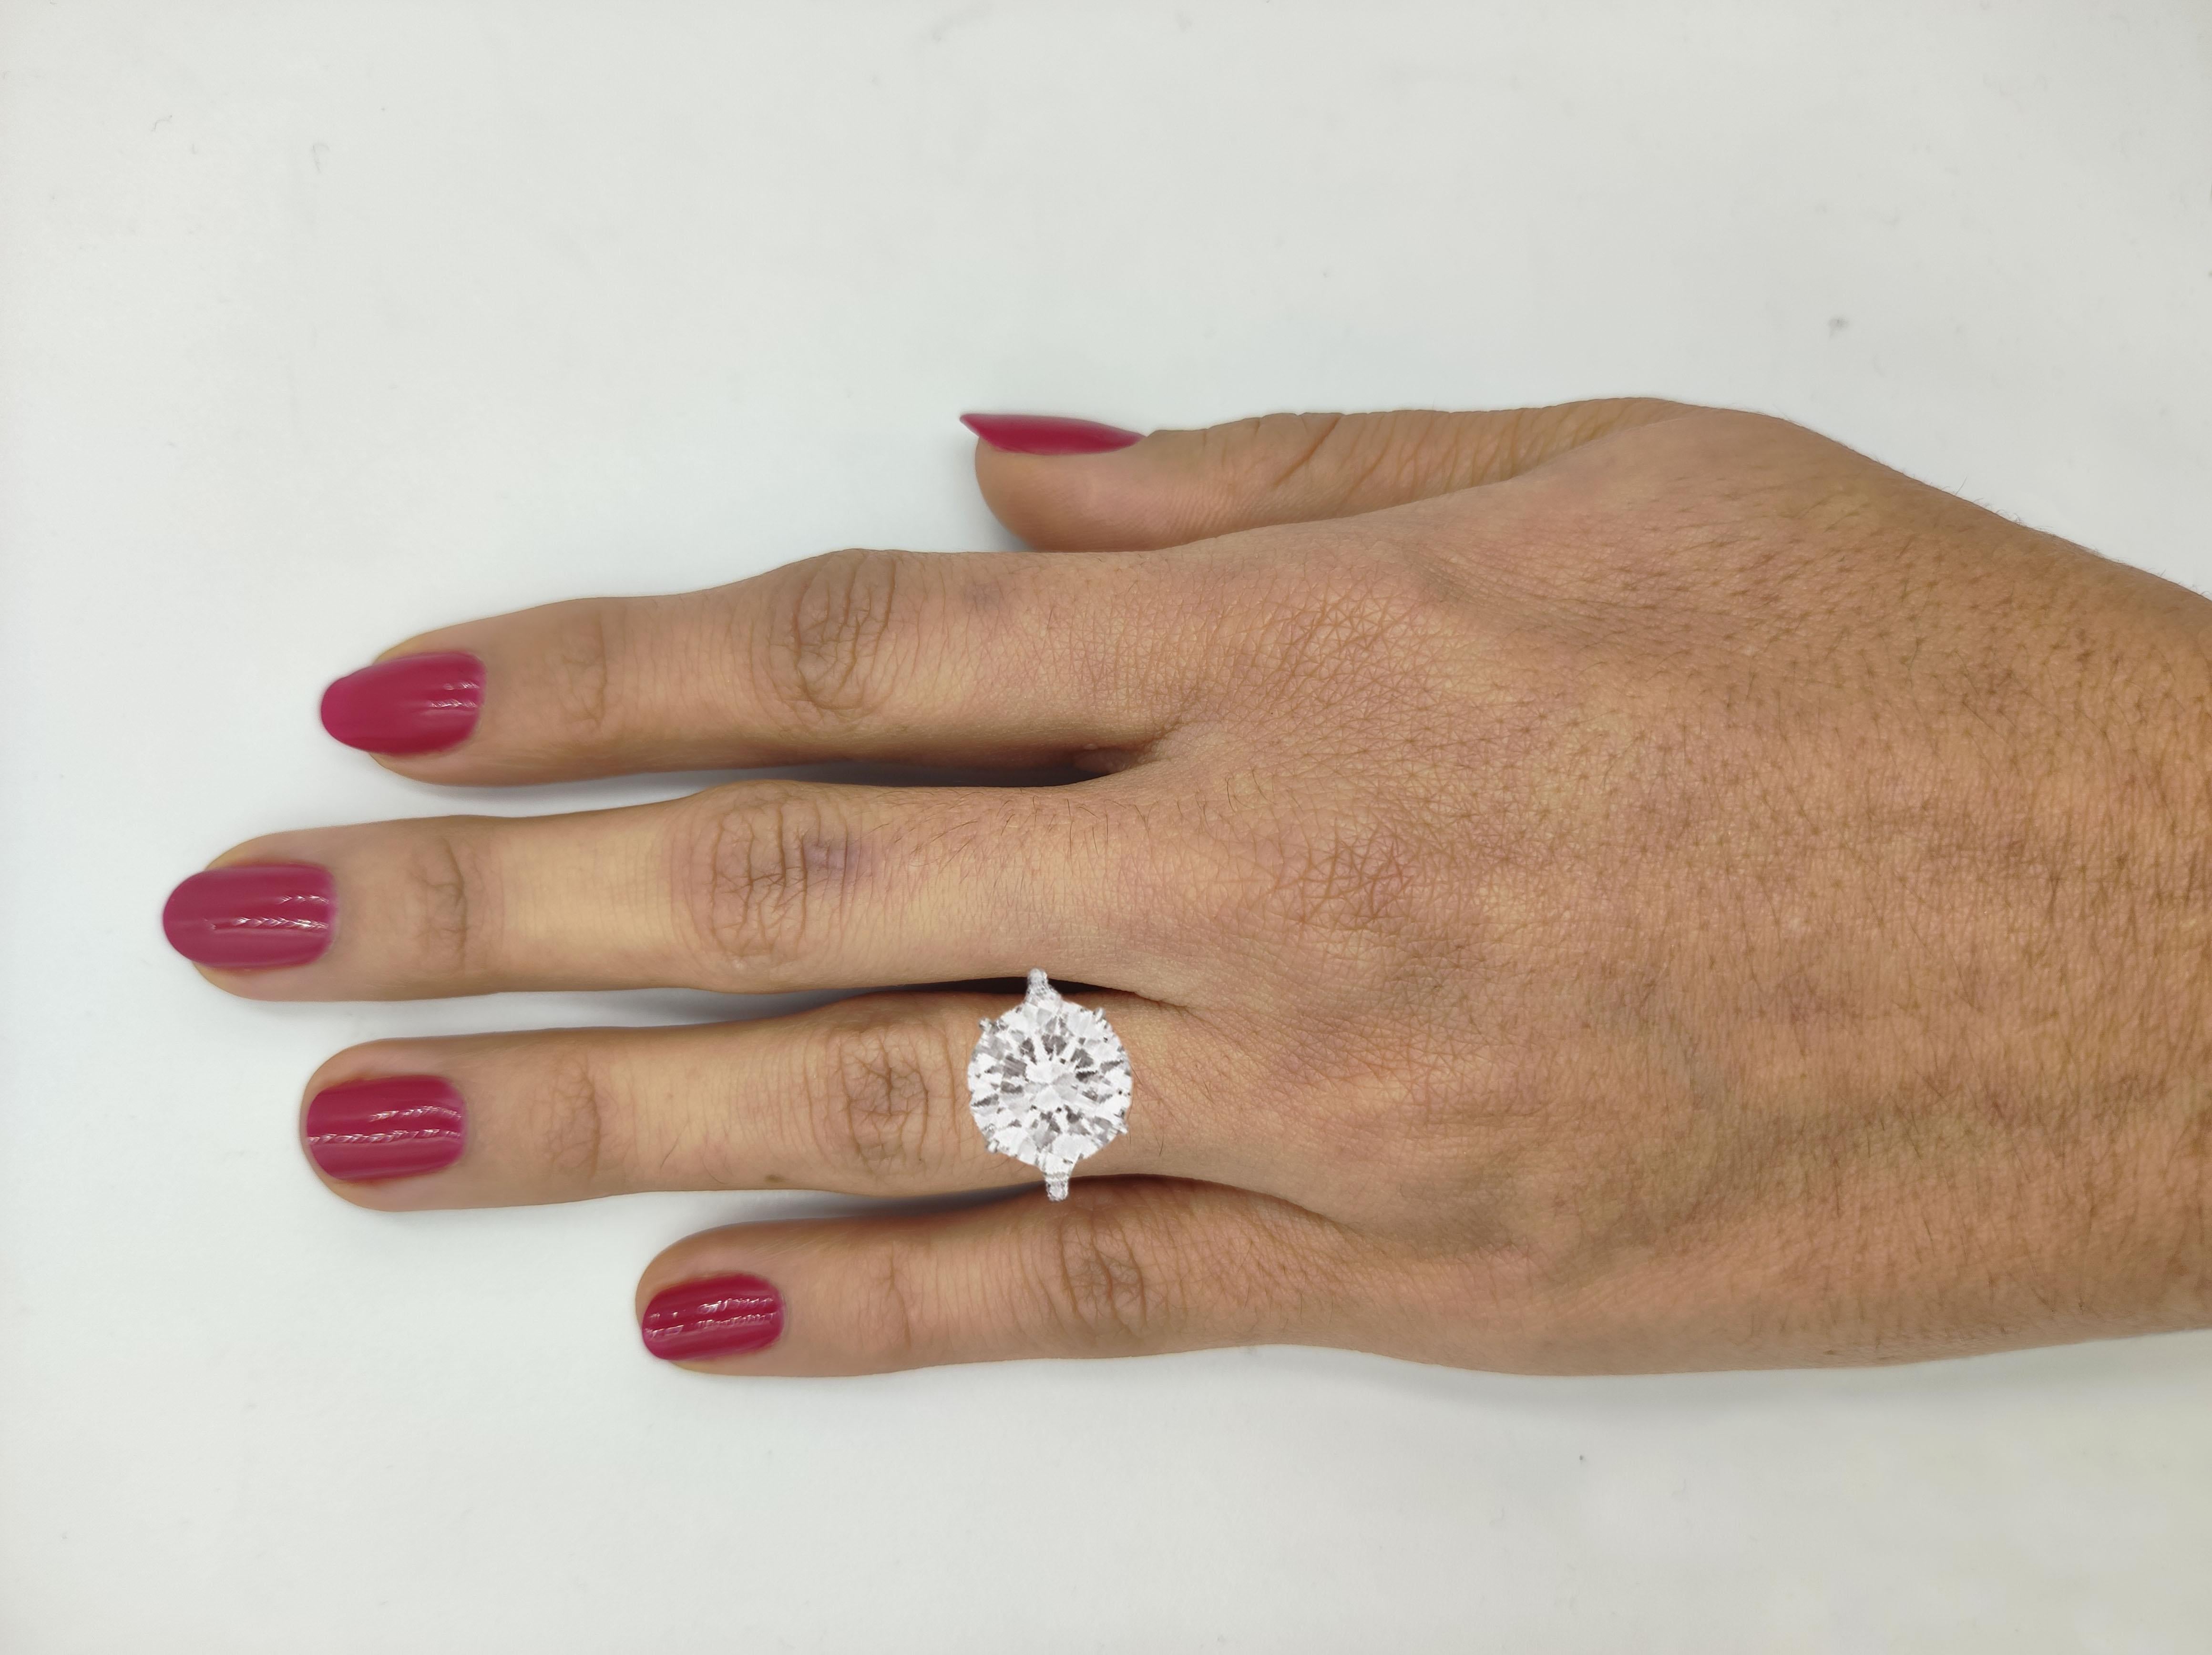 6 carat diamond ring cost